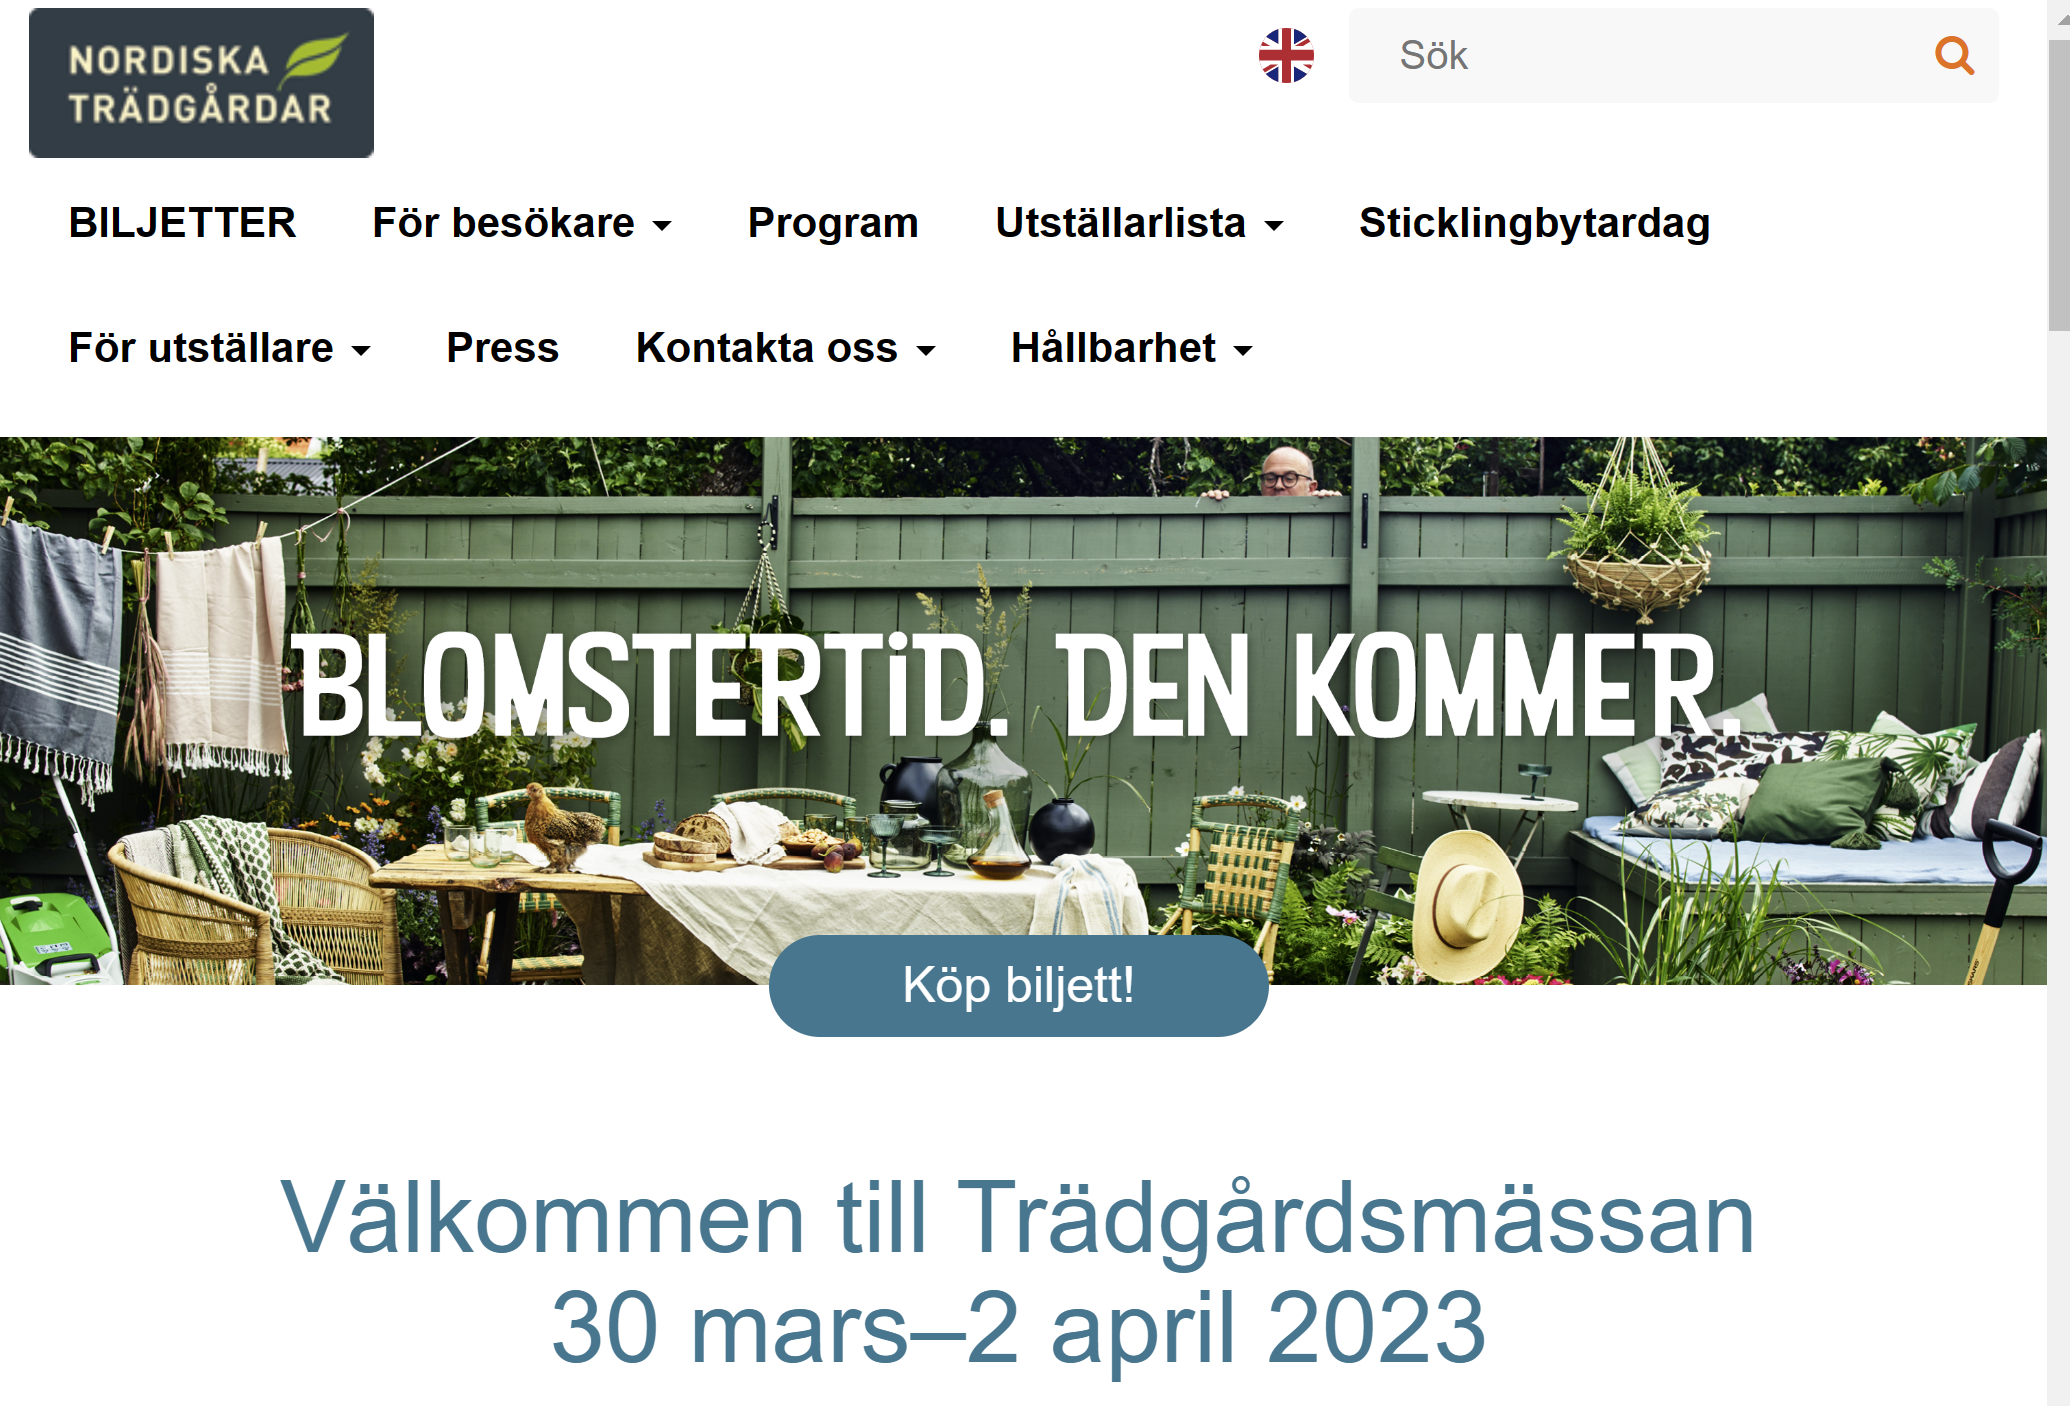 Websida från nordiska Trädgårdar